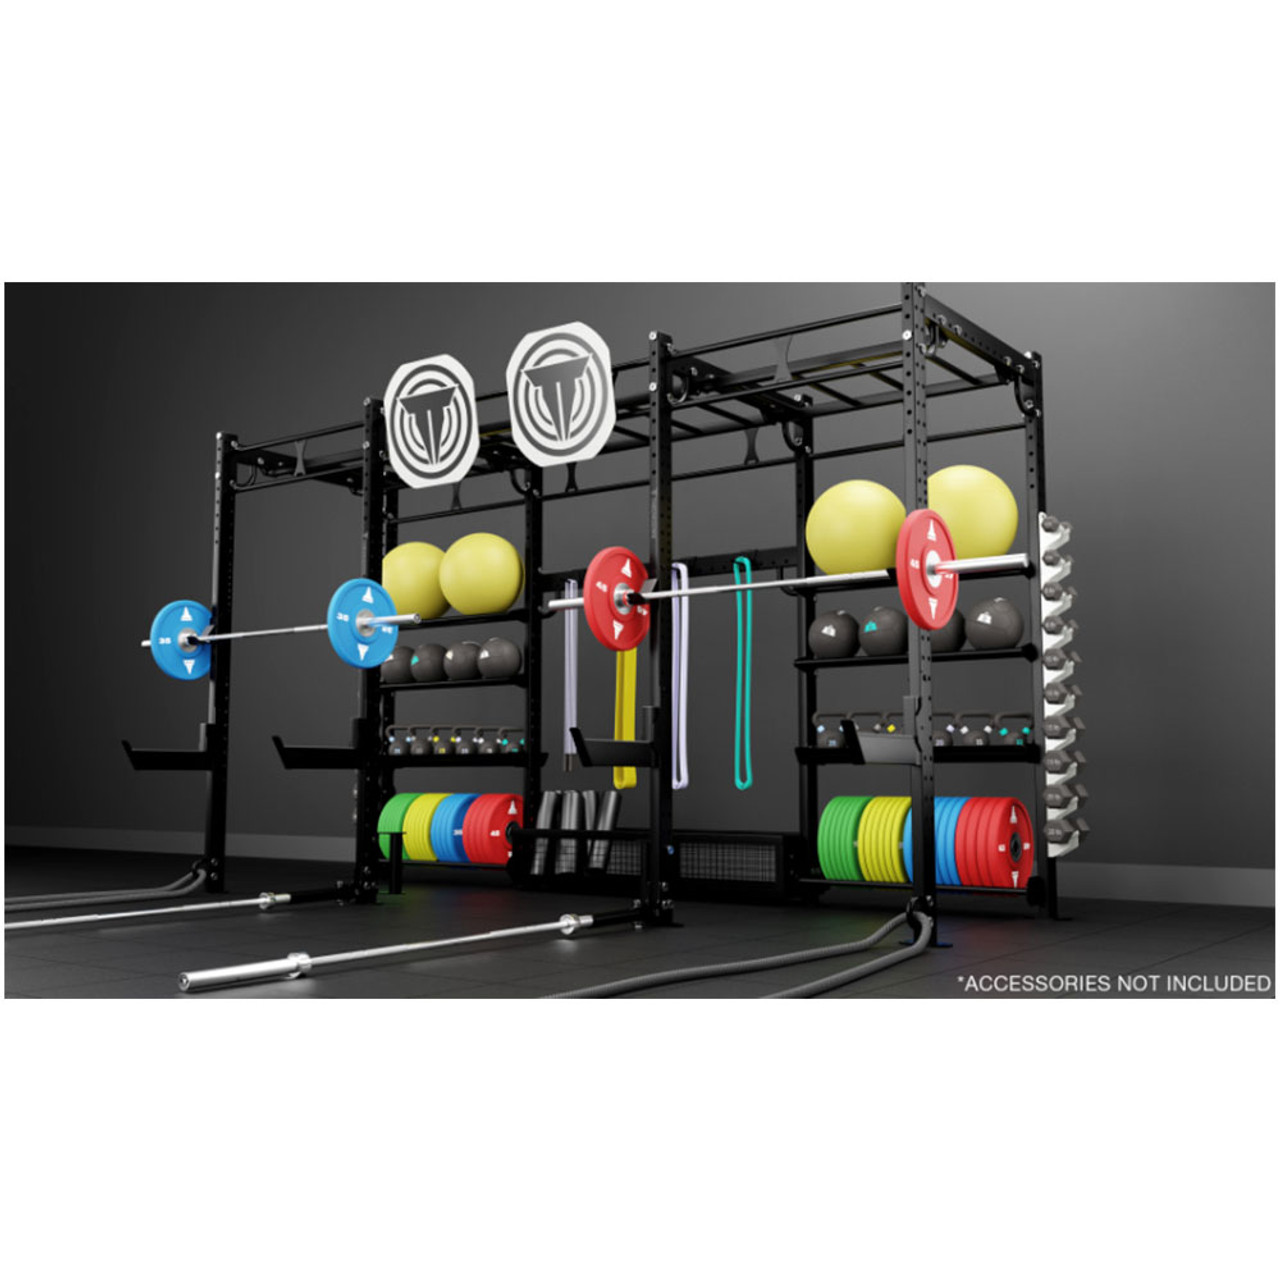 14 X 4 Monkey Bar Storage Rack - X1 Package – Torque Fitness